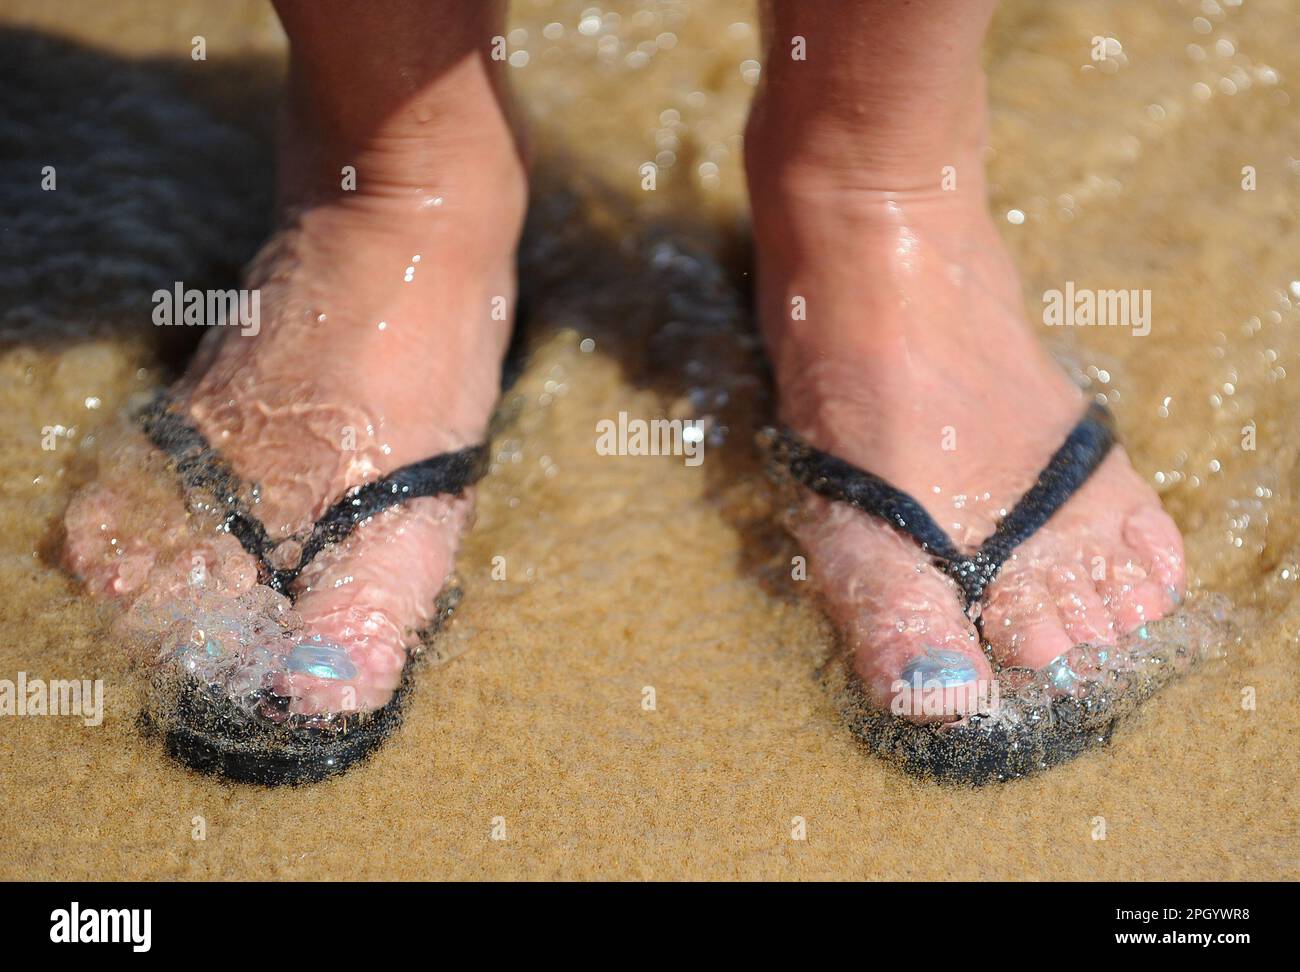 Foto de archivo fechada el 12/06/14 de pies en chanclas en la playa de  Praia da Luz, Portugal. Los turistas del Reino Unido interesados en evitar  las fuertes subidas de precios se